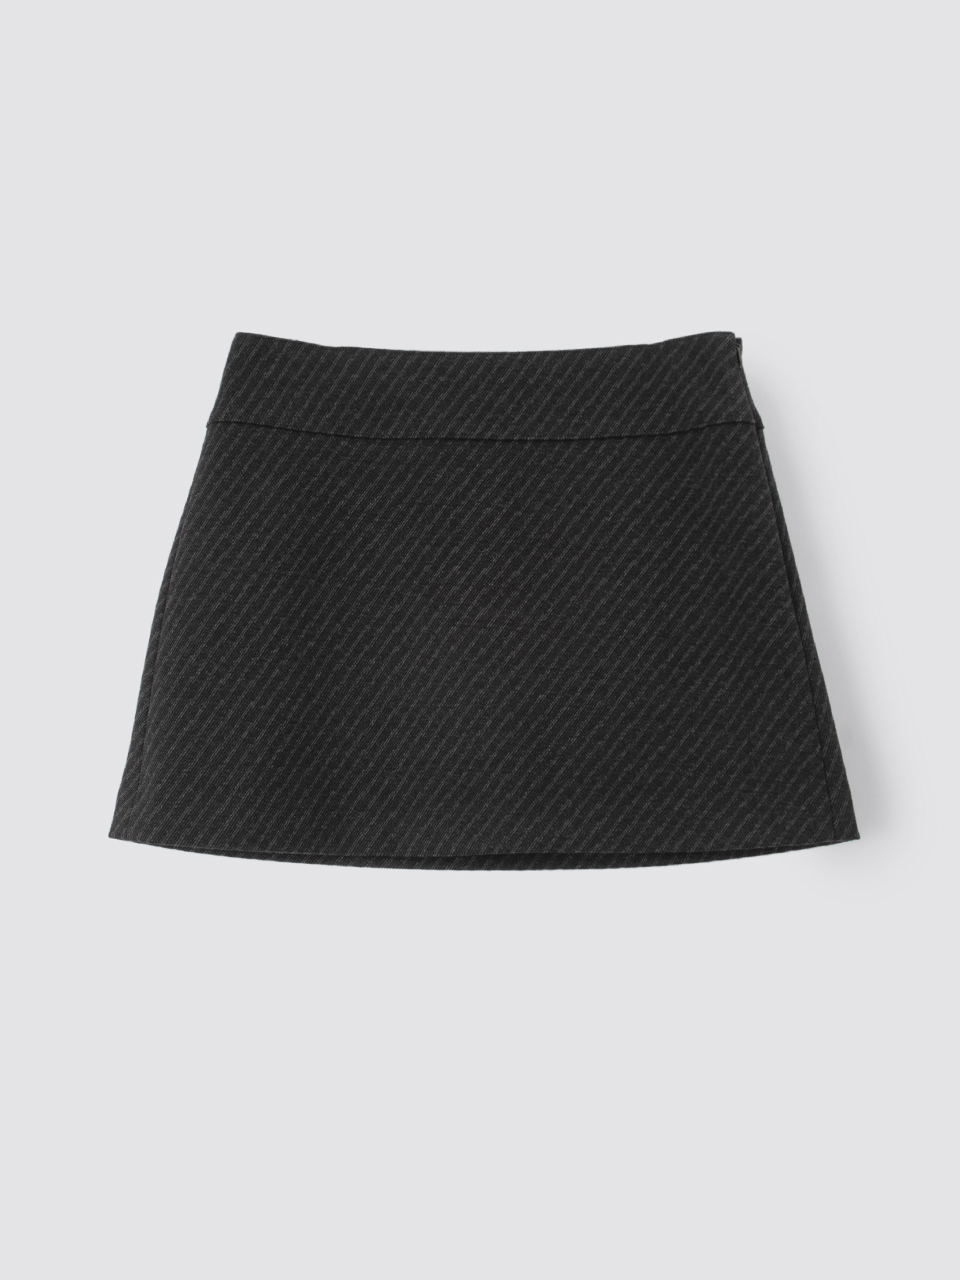 clueless mini skirt - charcoalBRENDA BRENDEN